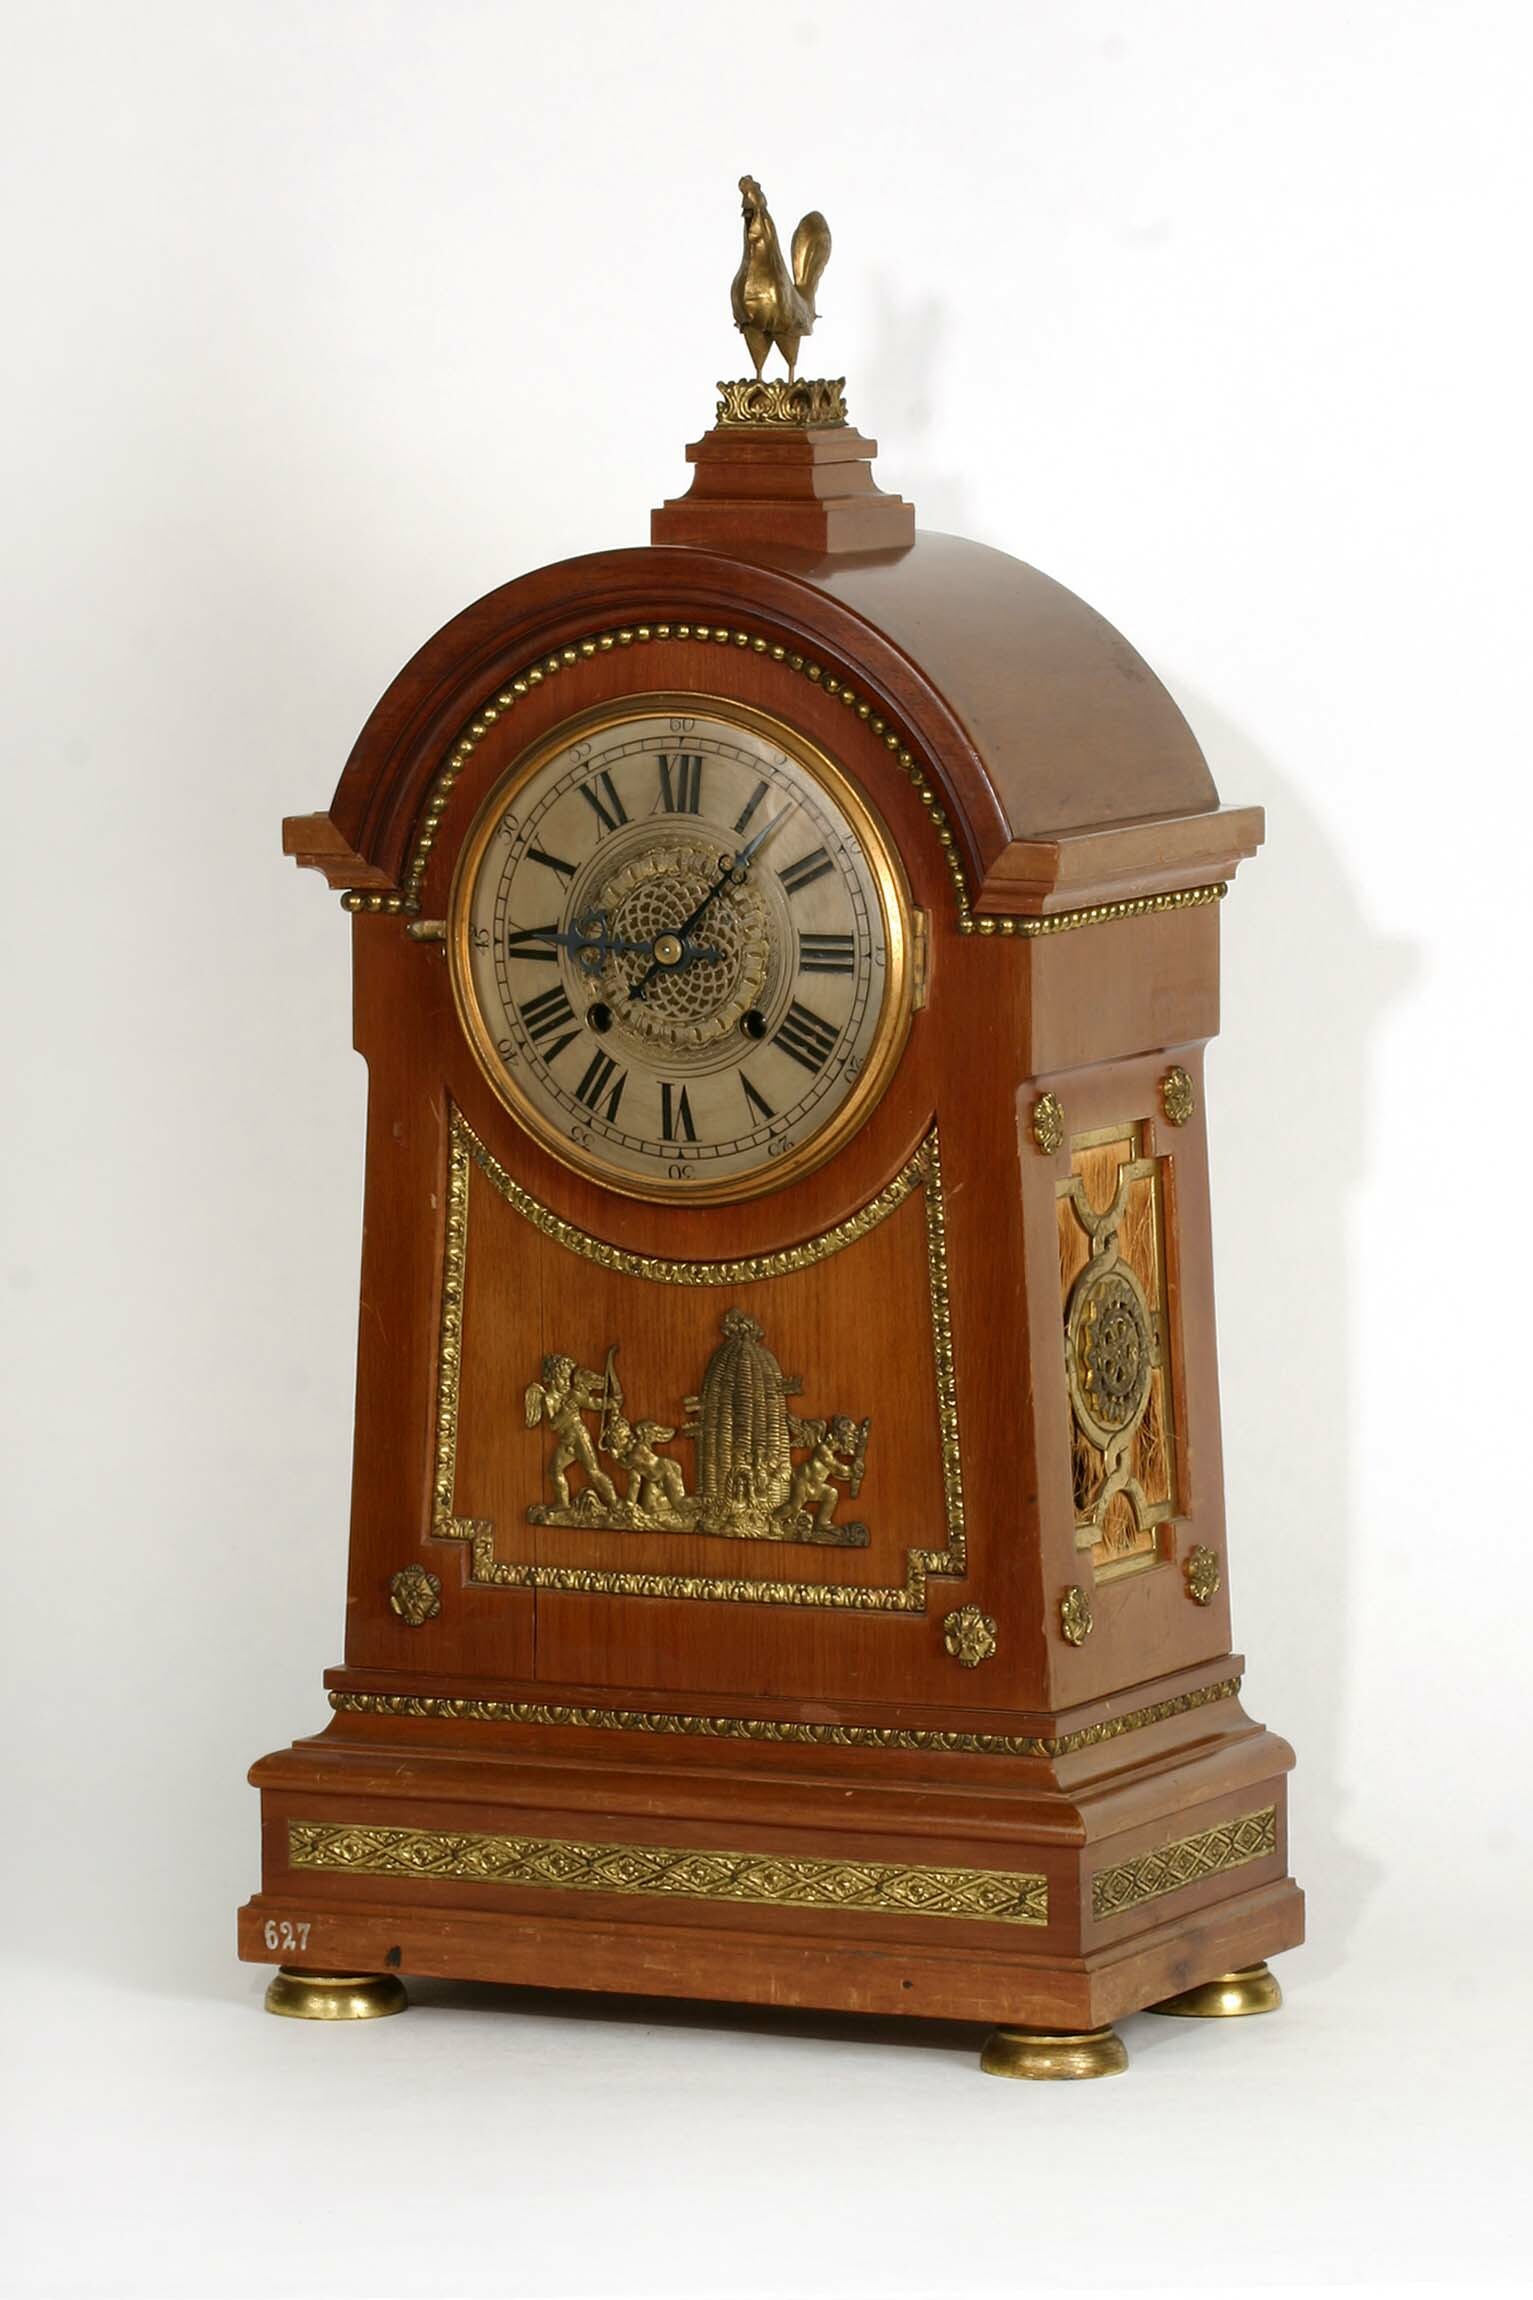 Tischuhr mit Hahn, Emilian Wehrle und Co., Robert Bichweiler, A. Tritschler, Furtwangen, um 1900 (Deutsches Uhrenmuseum CC BY-SA)